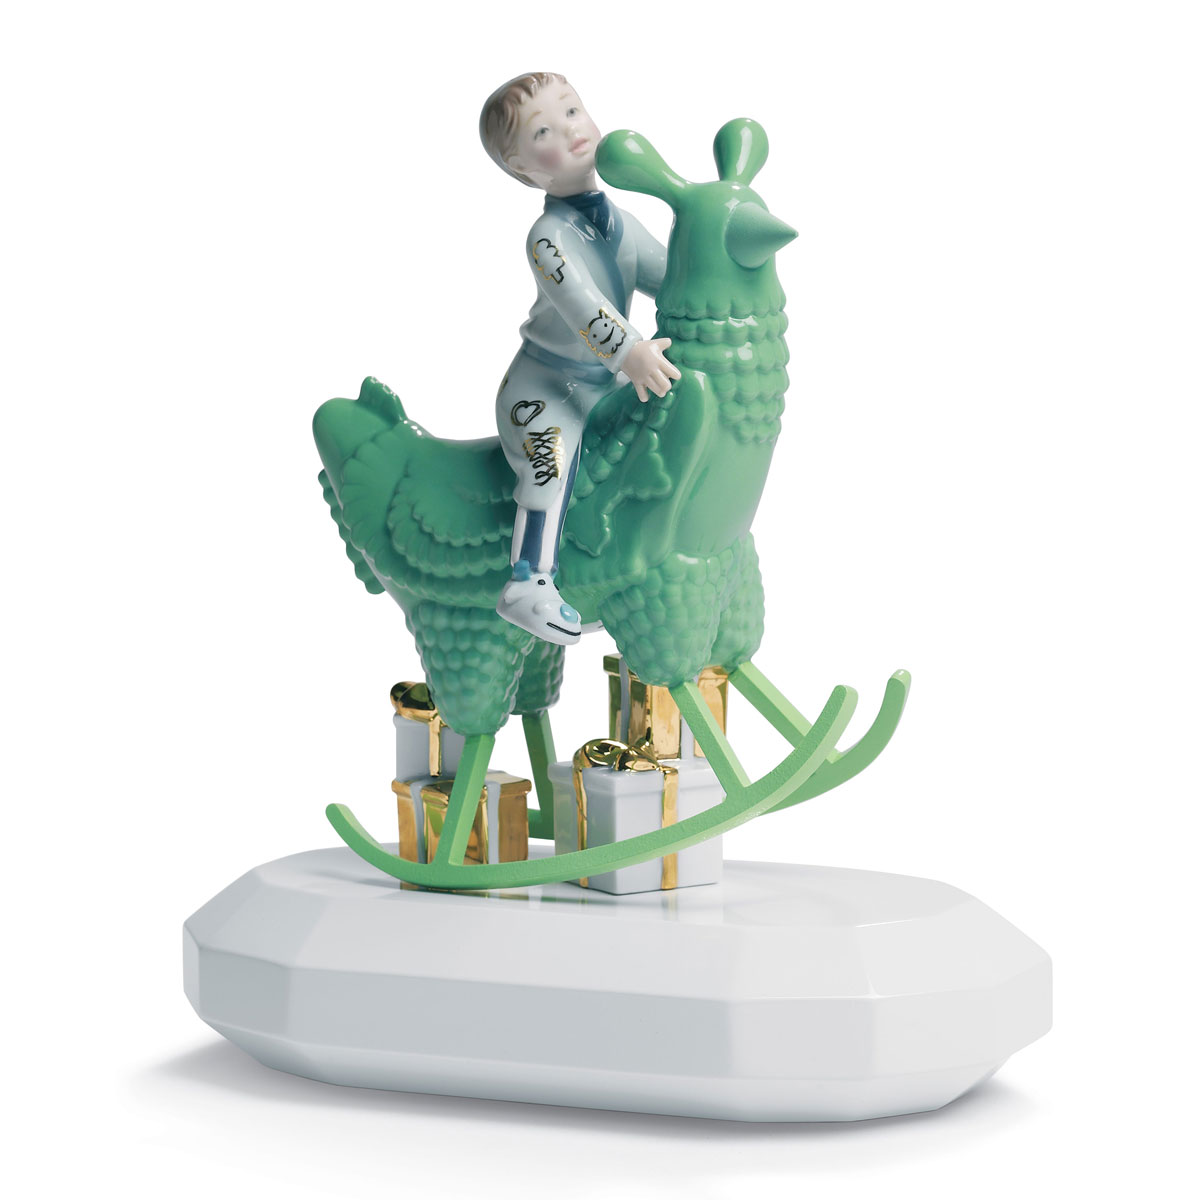 Lladro Design Figures, The Rocking Chicken Ride Figurine. By Jaime Hayon